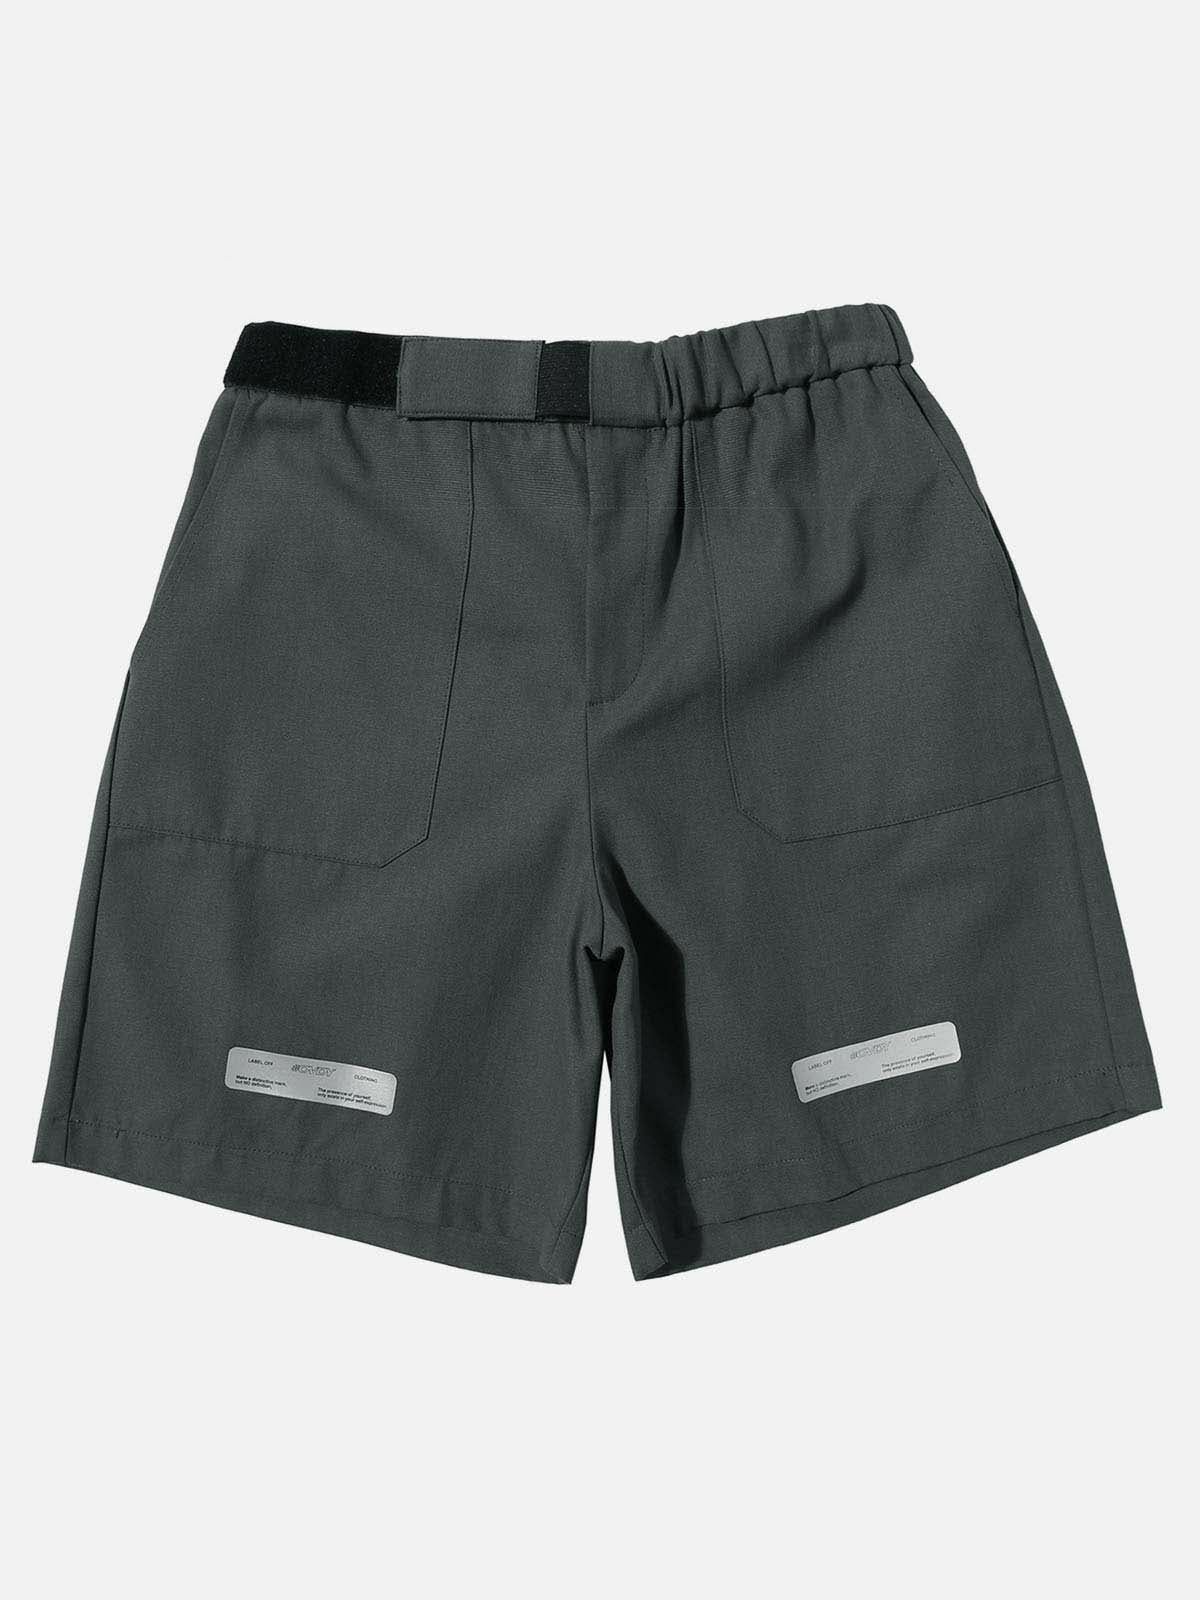 versatile velcro waist shorts urban style essential 5764